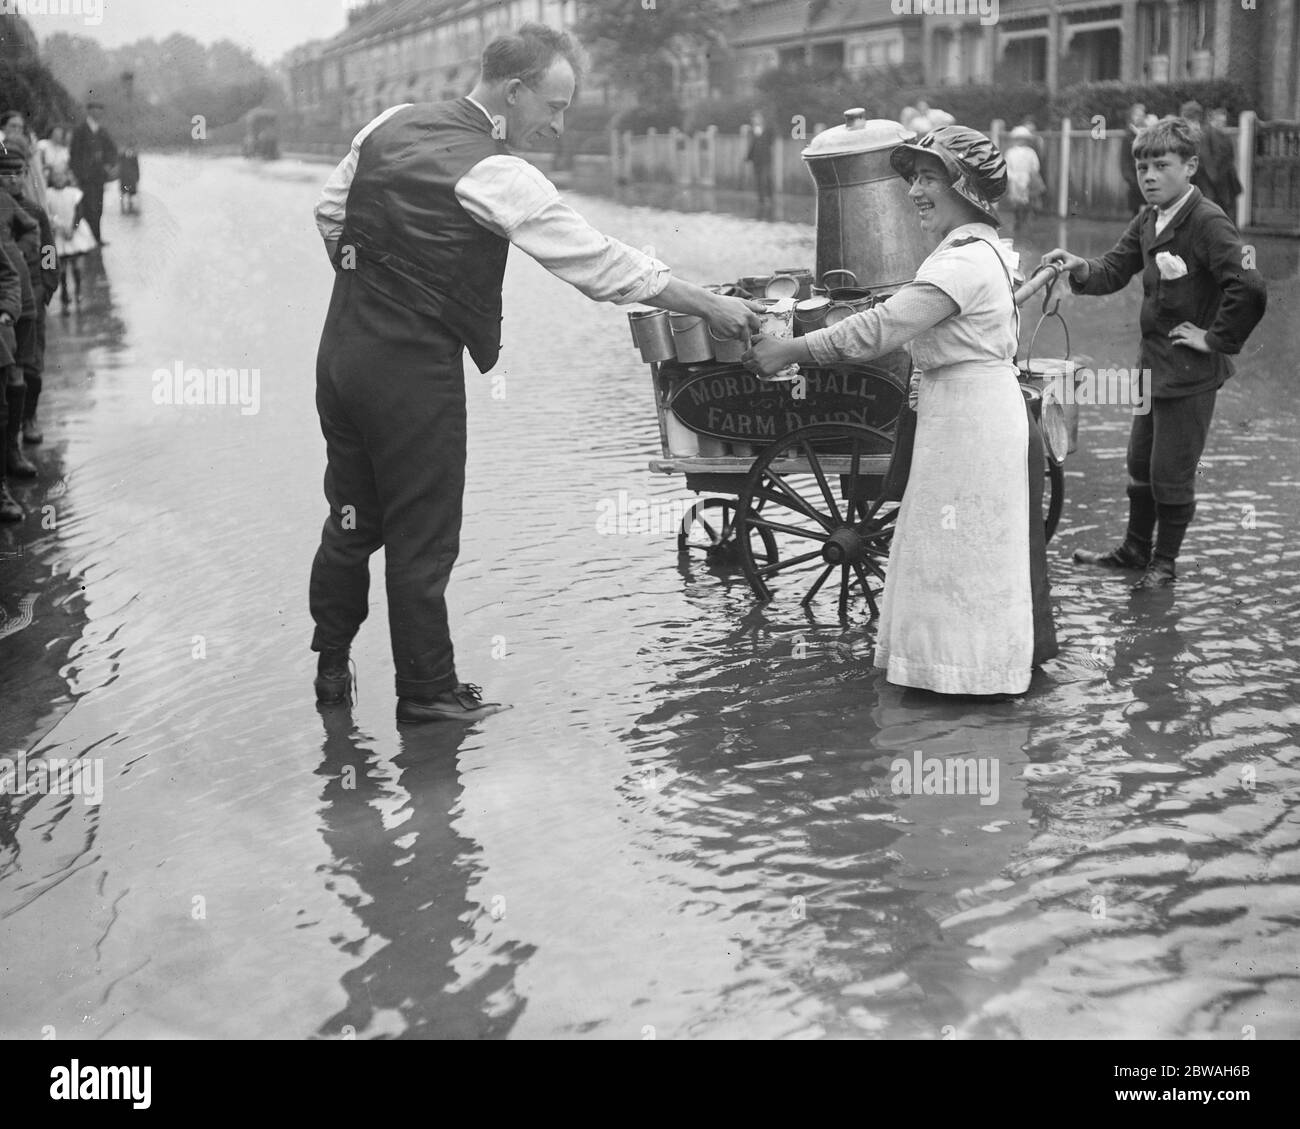 Les inondations à Raynes Park Morden Hall Farm Dairy, qui approvisionnent un client le 2 août 1917 Banque D'Images